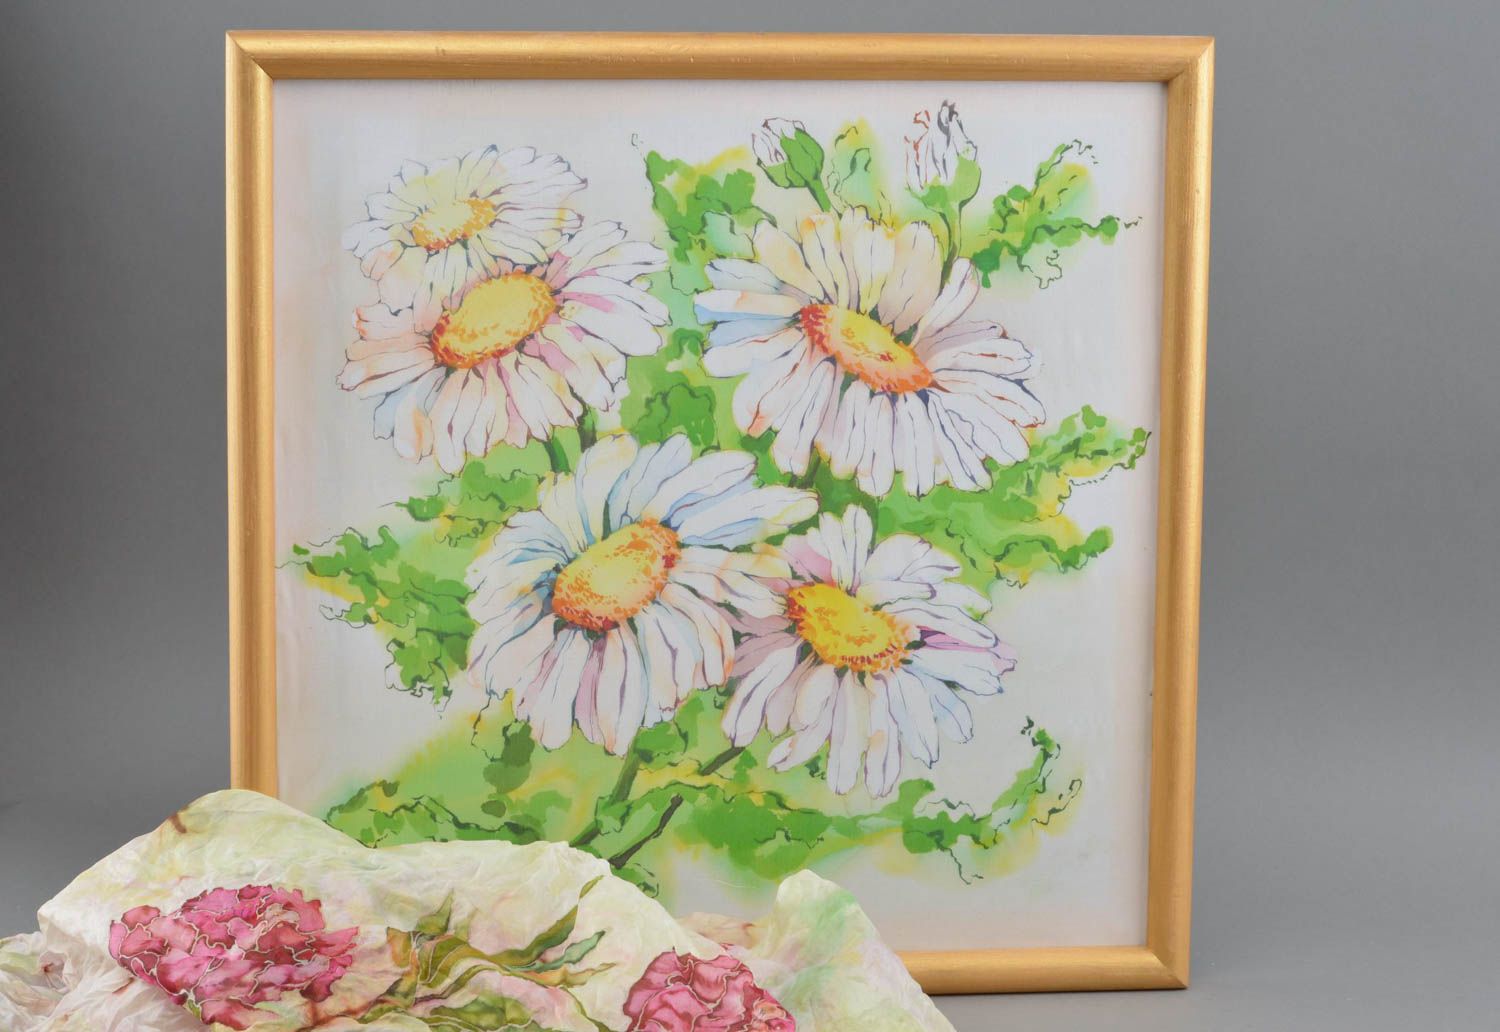 Картина с росписью по шелку красивая авторская ручной работы Утренние цветы фото 1